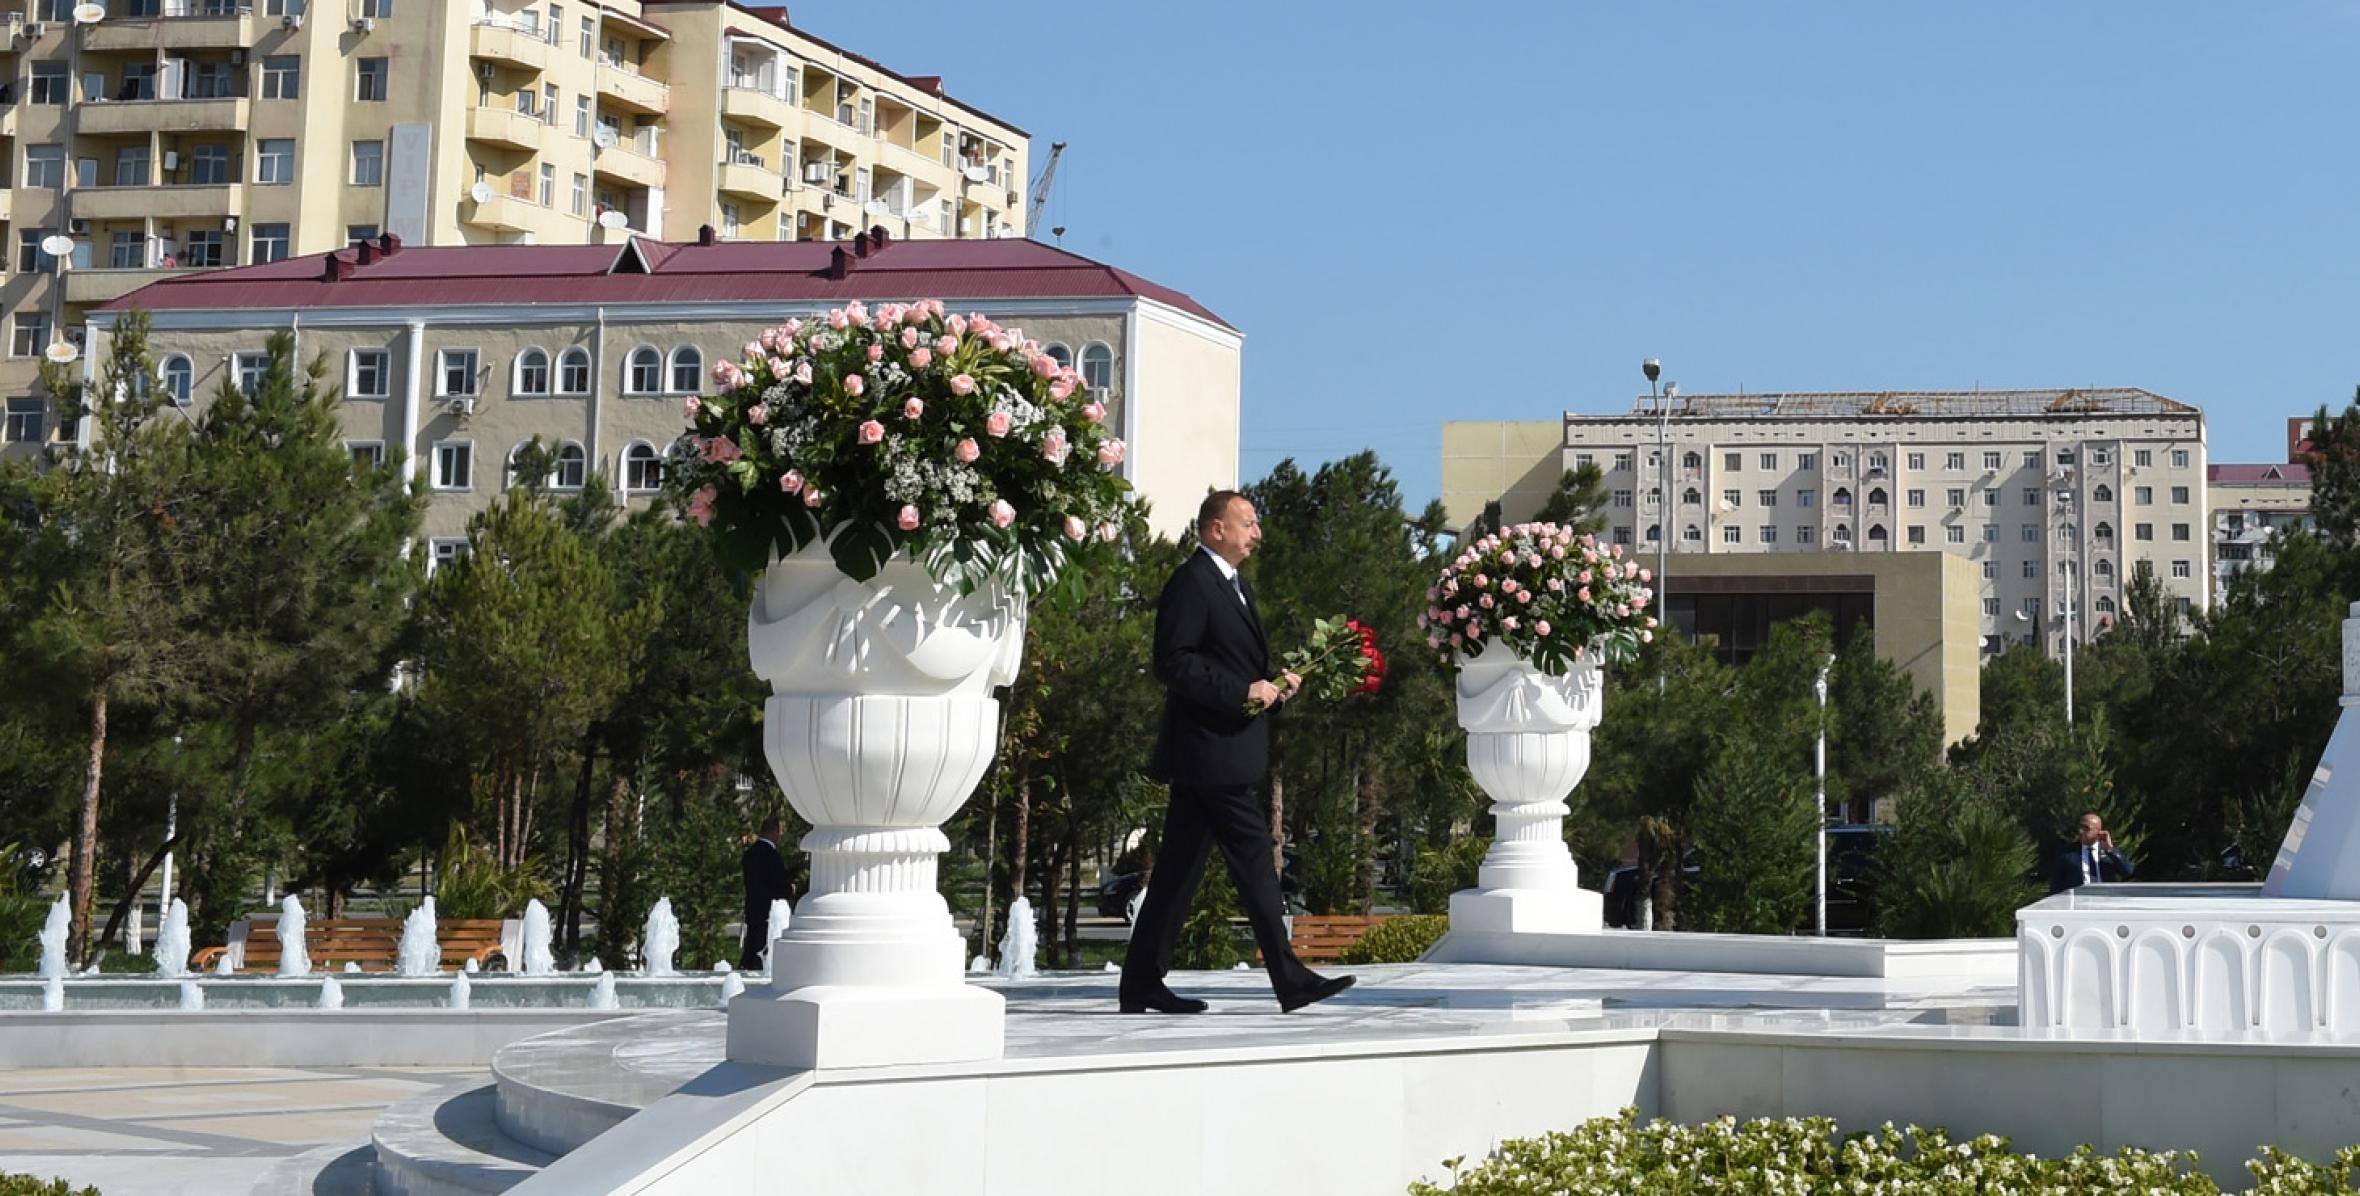 Ilham Aliyev arrived in Sumgayit for visit